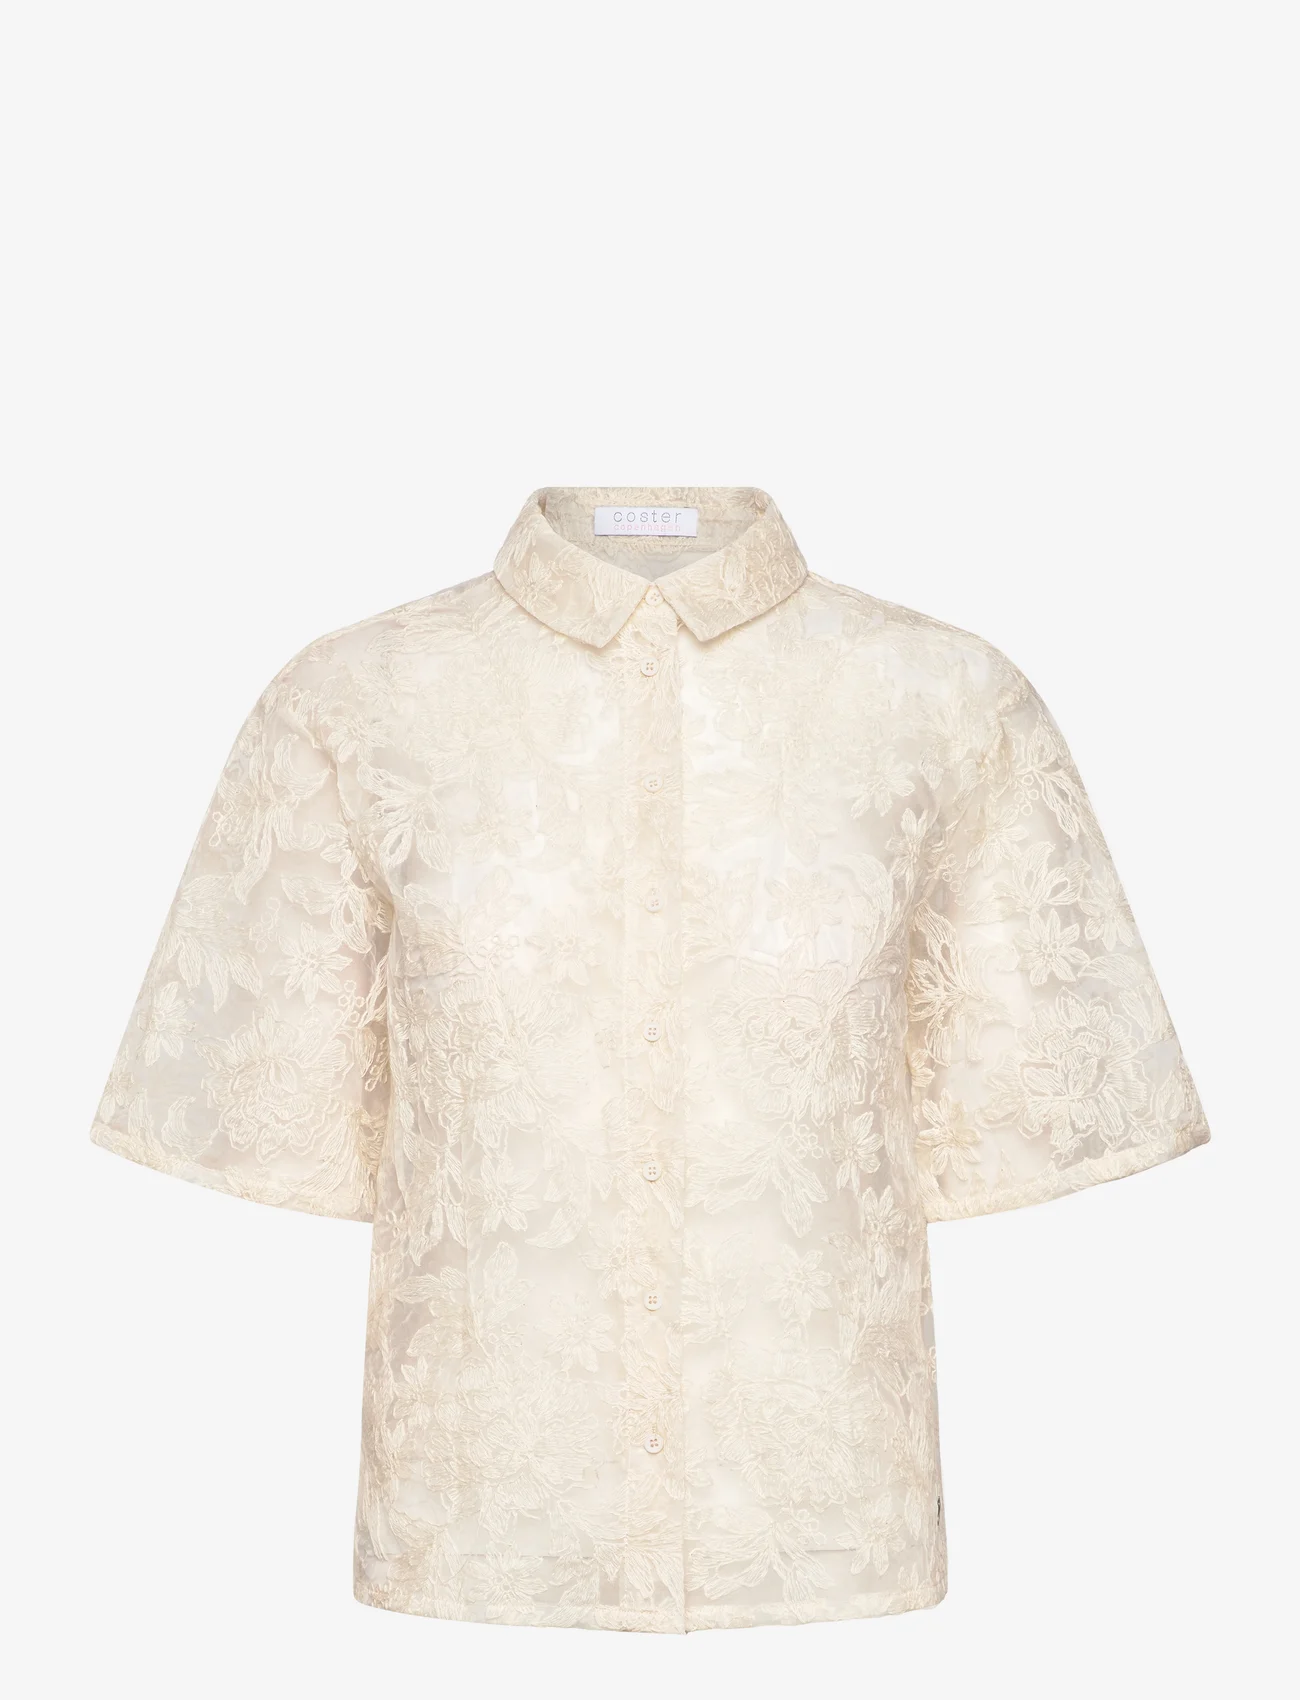 Coster Copenhagen - Shirt with lace - kortærmede skjorter - creme - 0